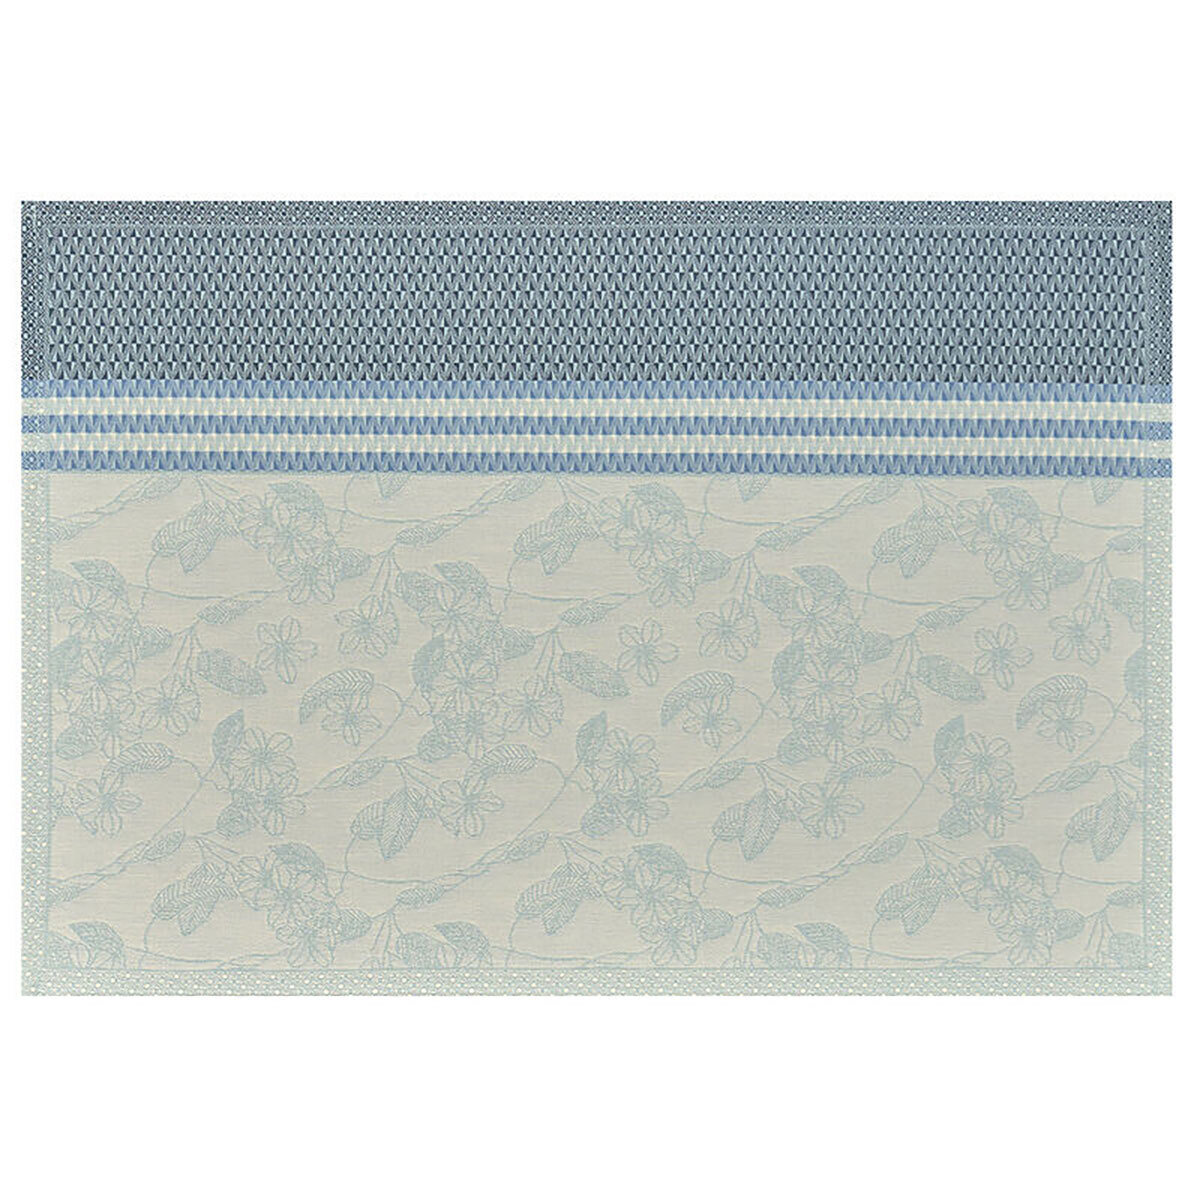 Le Jacquard Francais Essentiel Gravure Enduit Blue Coated Placemat 20 x 14 Inch 28694 Set of 4